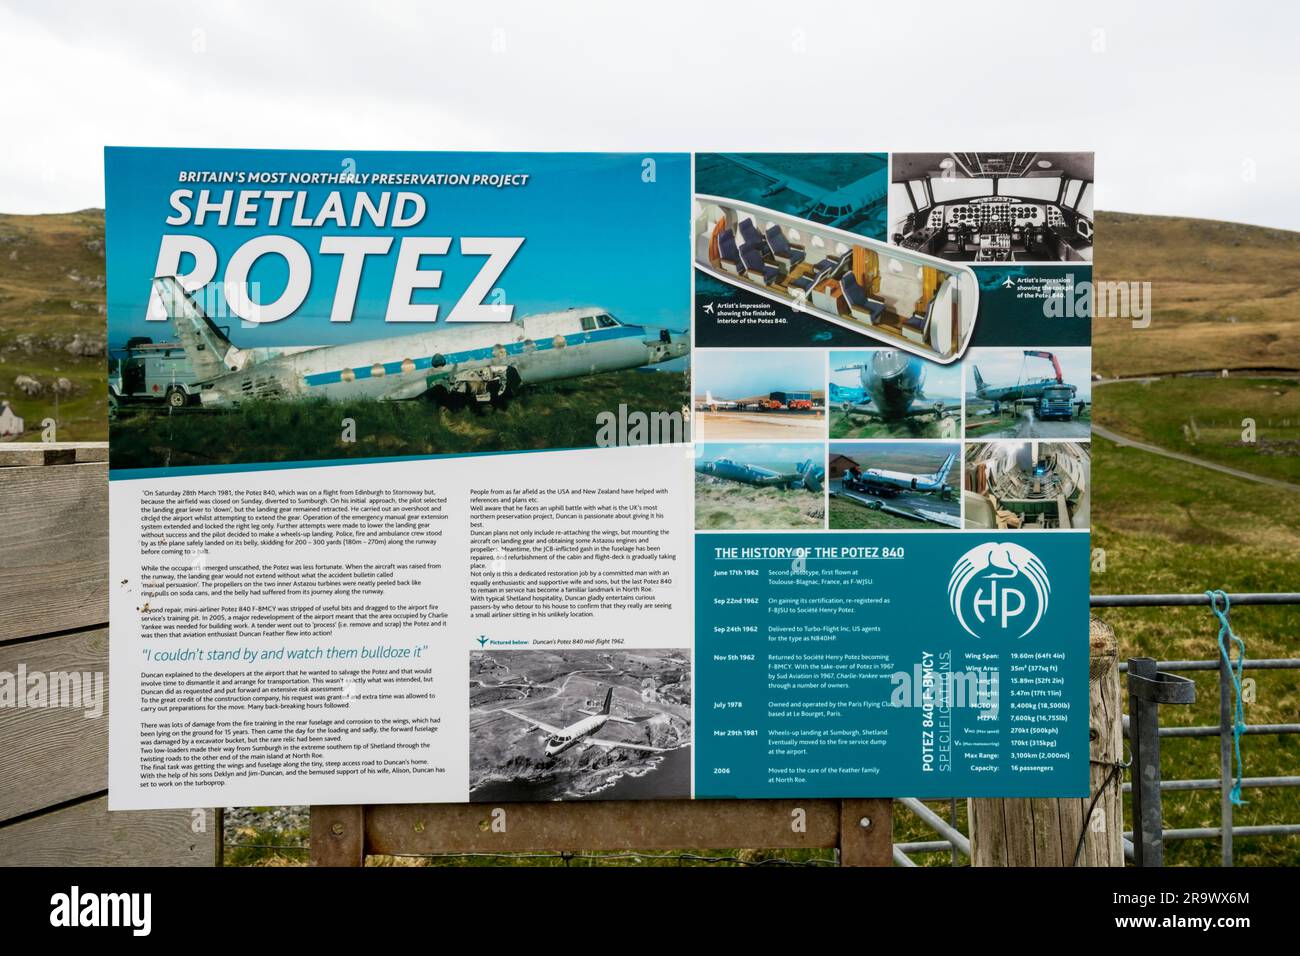 Cartello interpretativo con informazioni turistiche sulla fusoliera dell'aereo Potez 840 nel giardino di una casa a North Roe, Shetland. Foto Stock